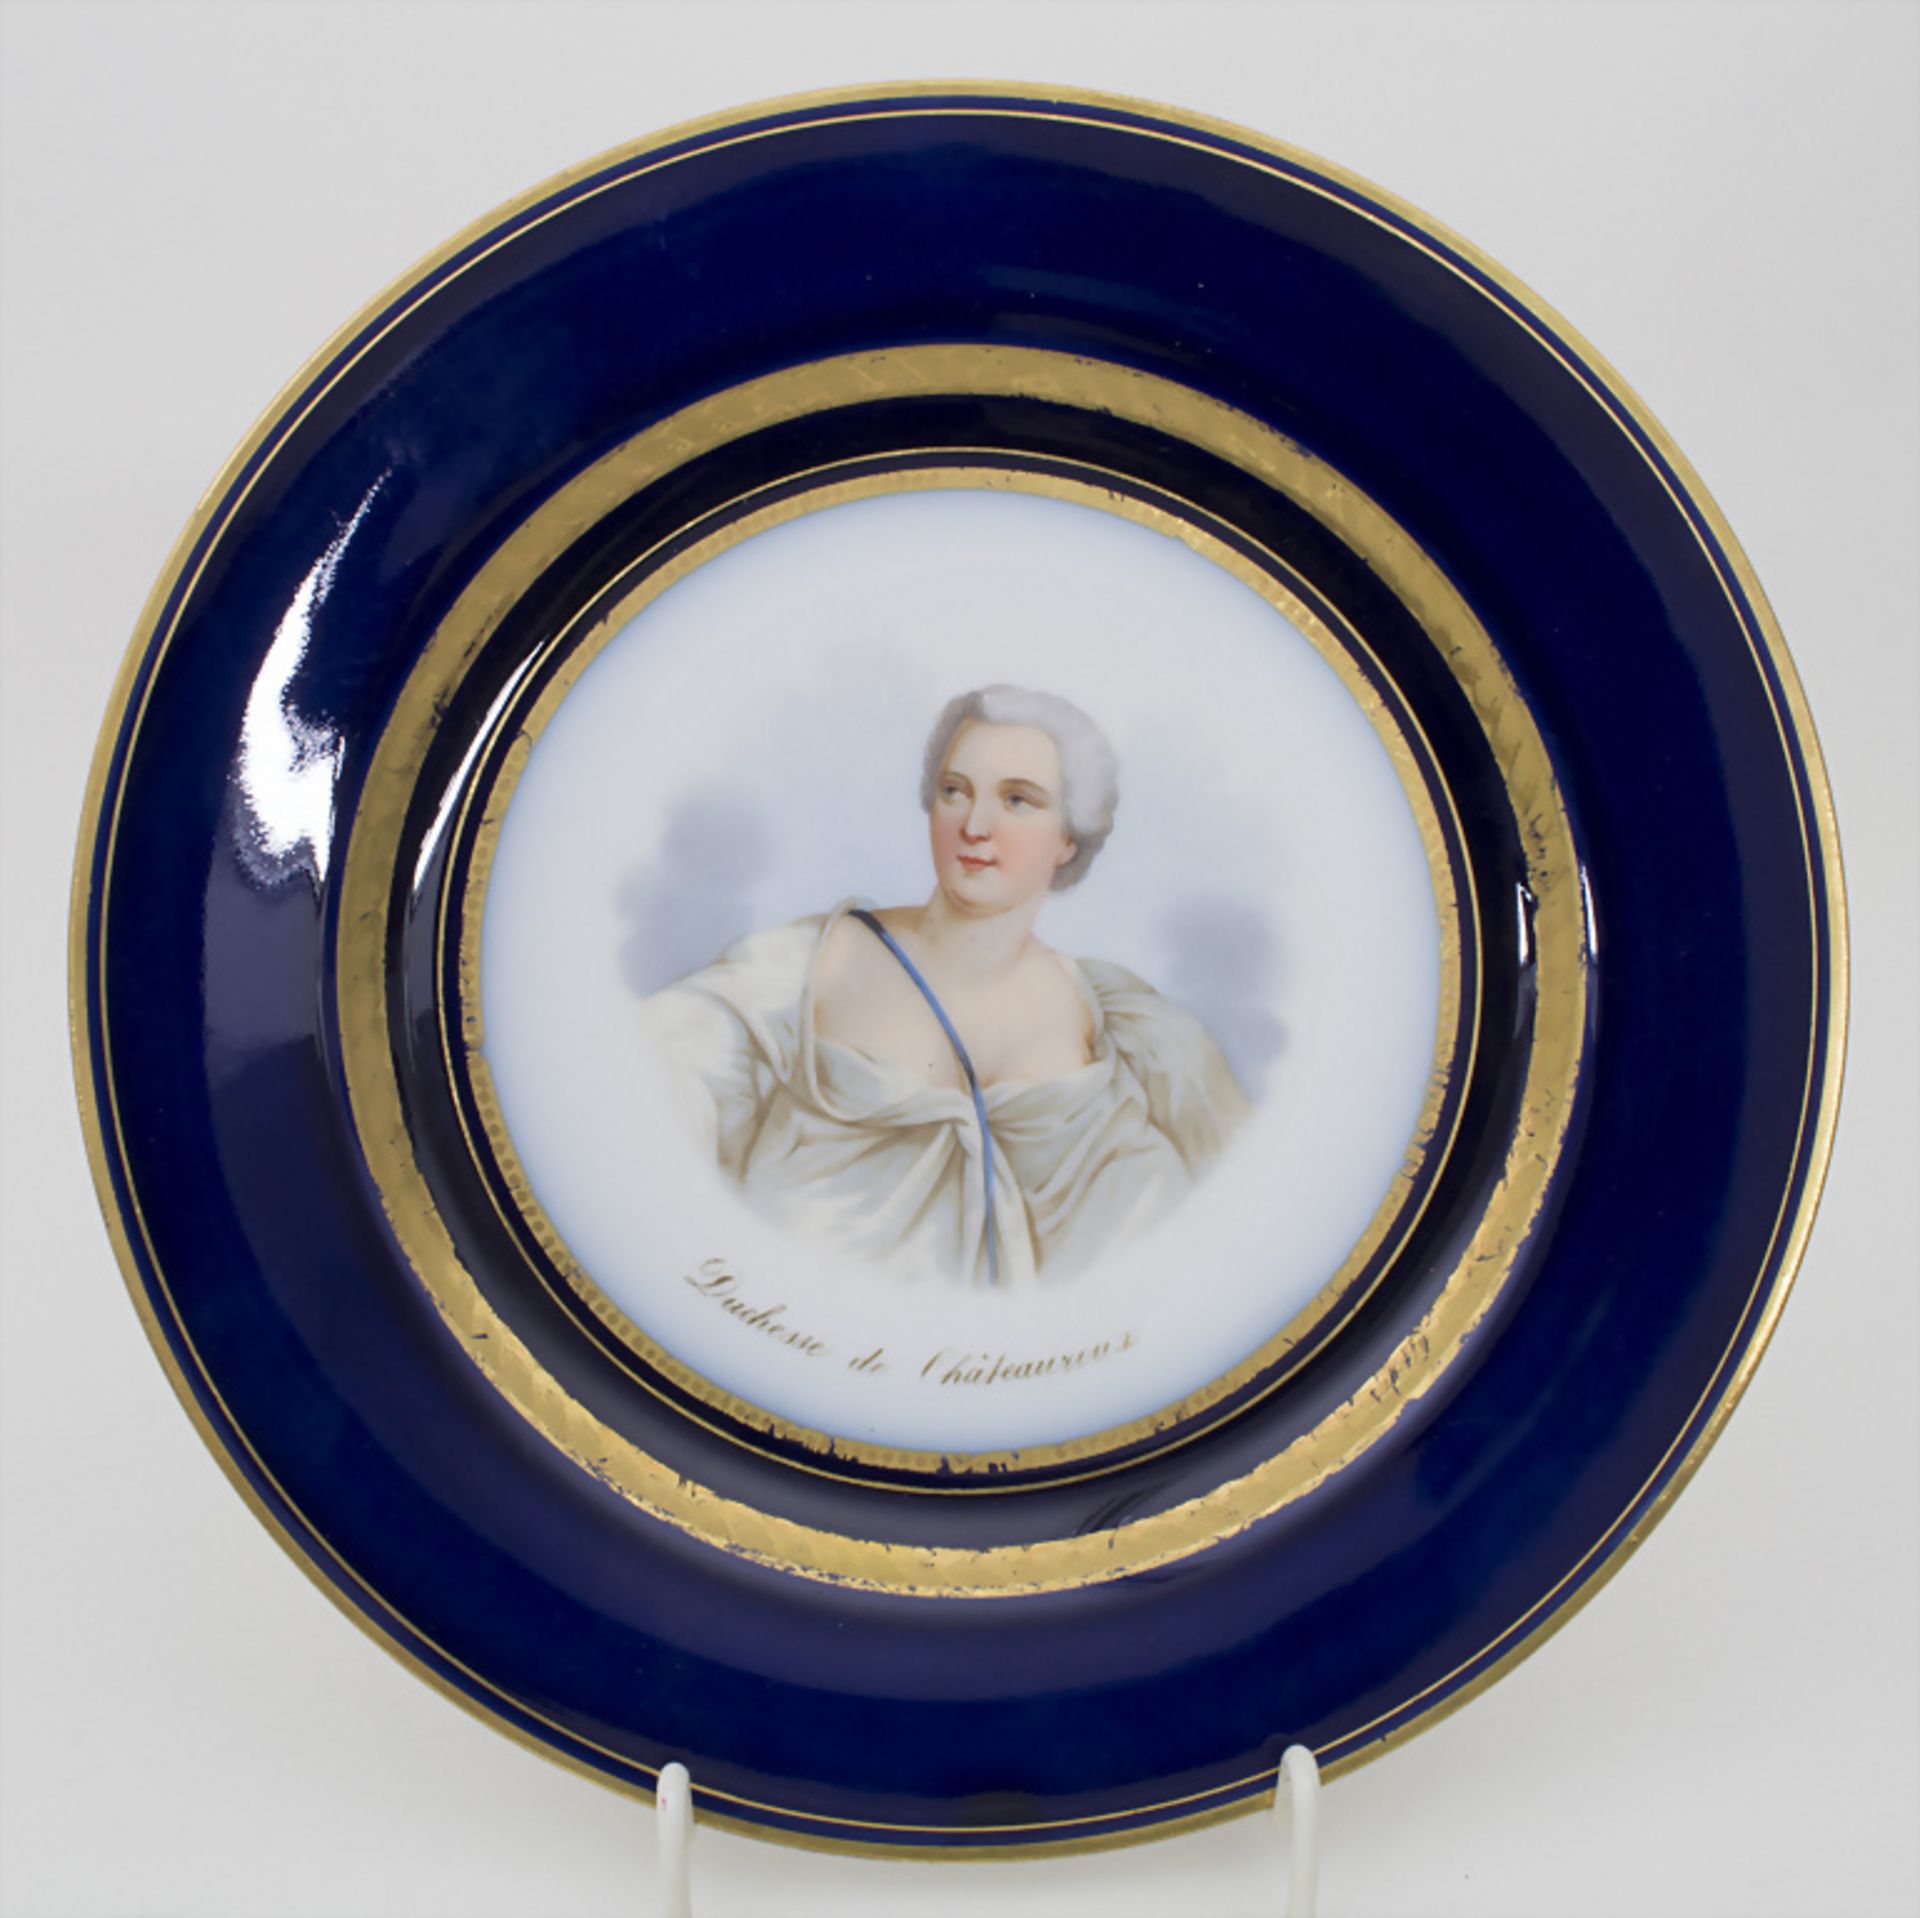 5 Teller mit Damenportraits / A set of 5 plates with ladies portaits, Sèvres, 1860-1861 - Bild 8 aus 17